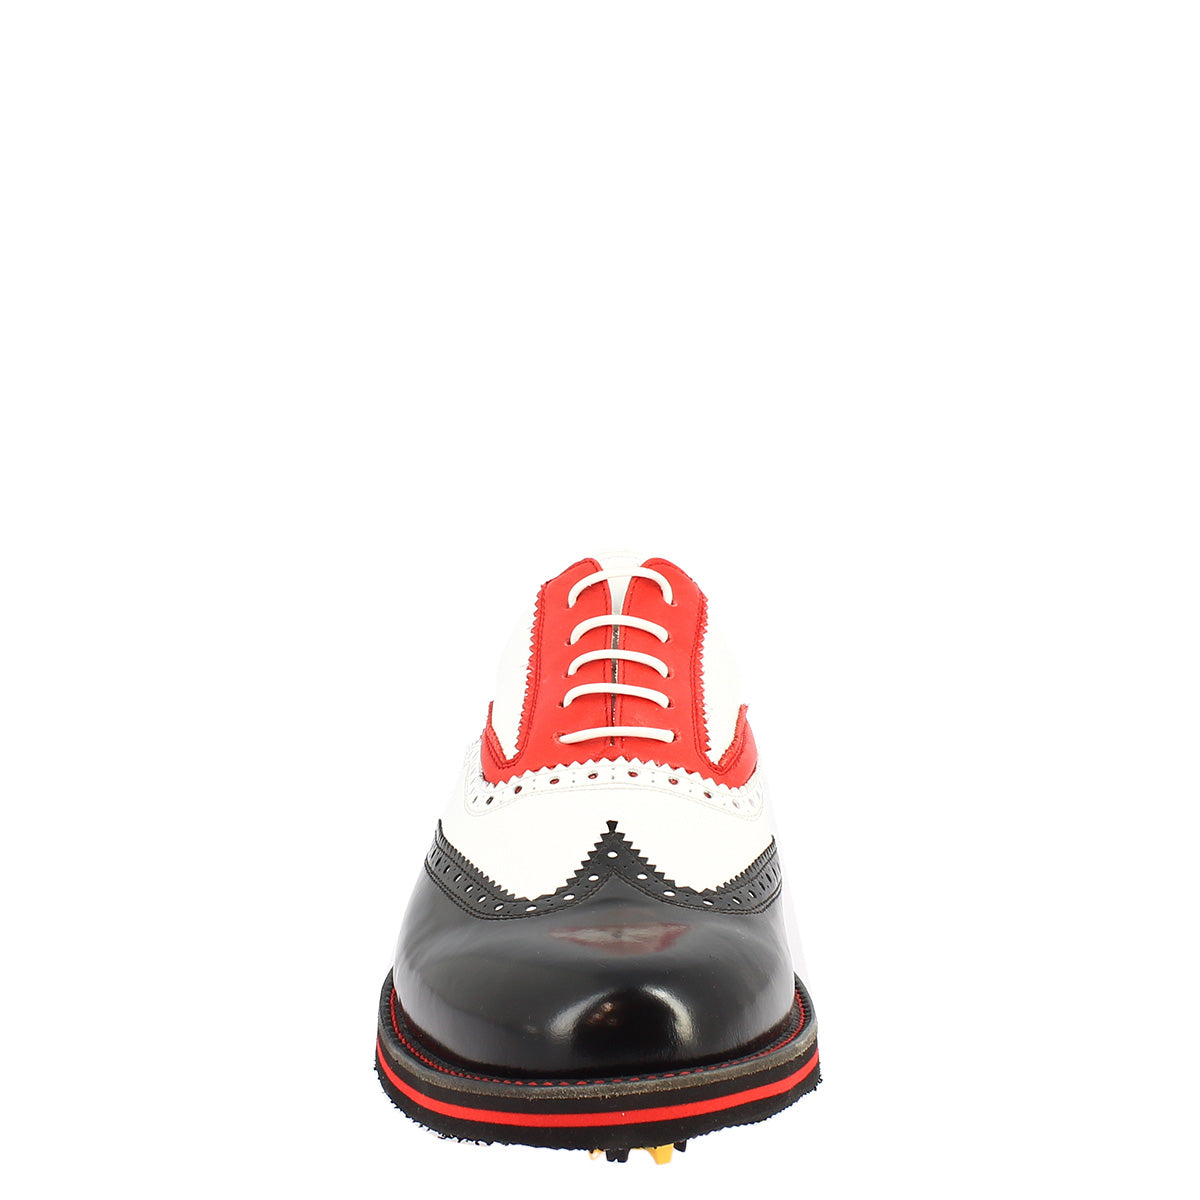 Handgefertigte Herren-Golfschuhe aus schwarz-weiß-rotem Vollnarbenleder